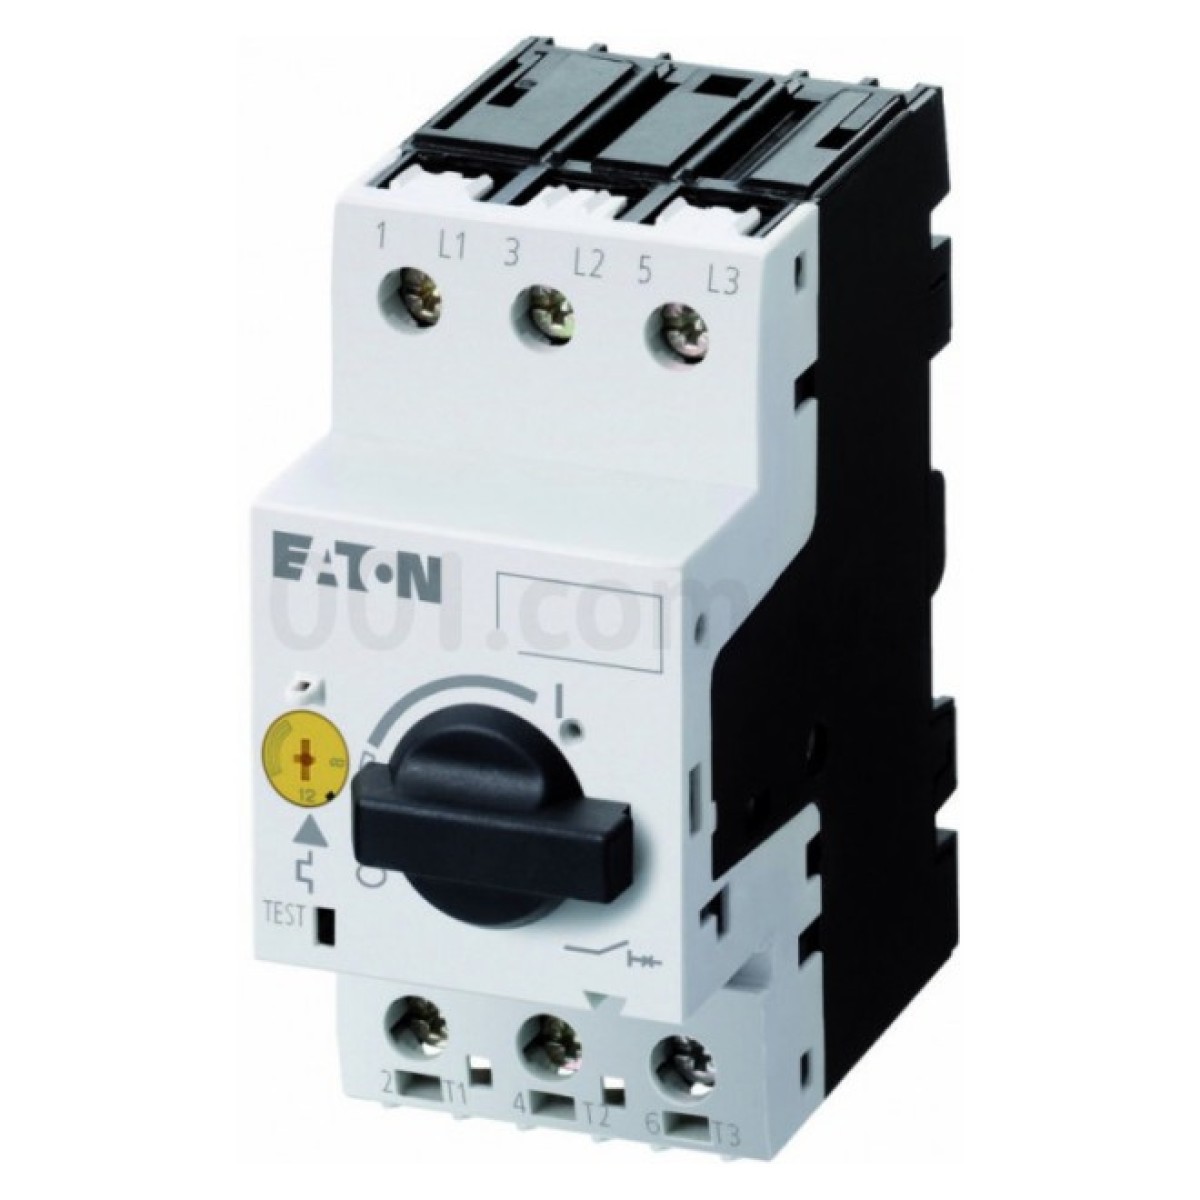 Автоматический выключатель защиты двигателя PKZM0-32 Ir=25...32А, Eaton (Moeller) 256_256.jpg